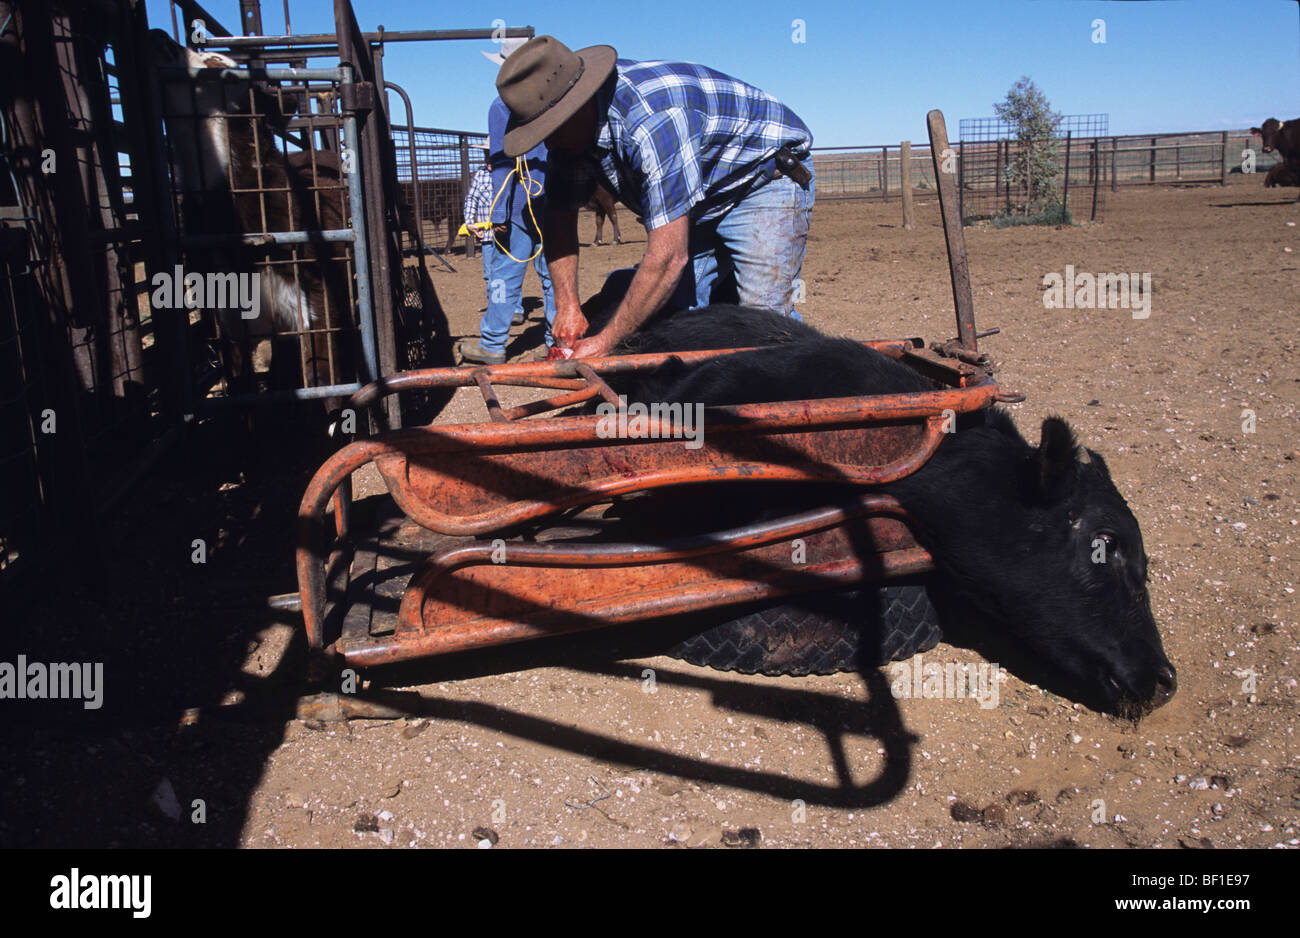 Cowboy entfernt Eierstöcke von einer Kuh, Kastration oder ovariectomising  weibliche Rinder, grobe Verfahren zu Rindfleisch Gewichtszunahme,  Australien Stockfotografie - Alamy